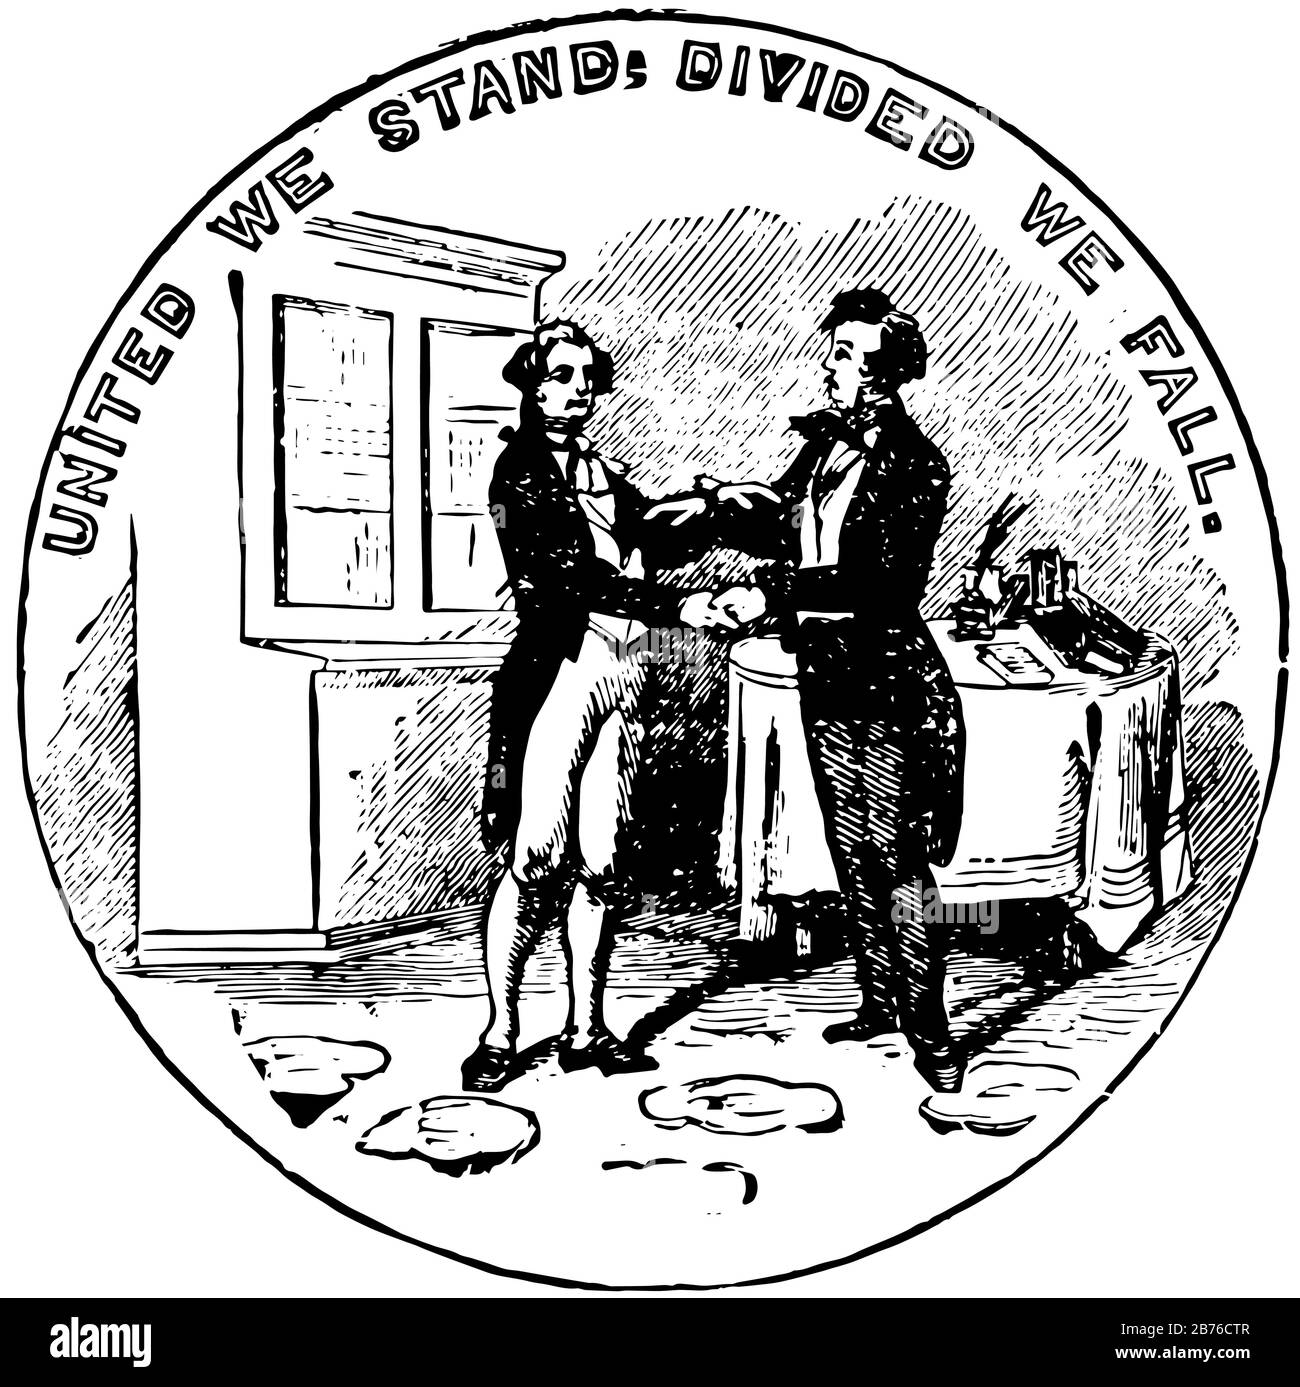 Das offizielle Siegel des US-Bundesstaats Kentucky im Jahr 1889 zeigt zwei Männer, einen in Buchskin, einen anderen in formalem Kleid, sie stehen sich gegenüber und kleiden Stock Vektor